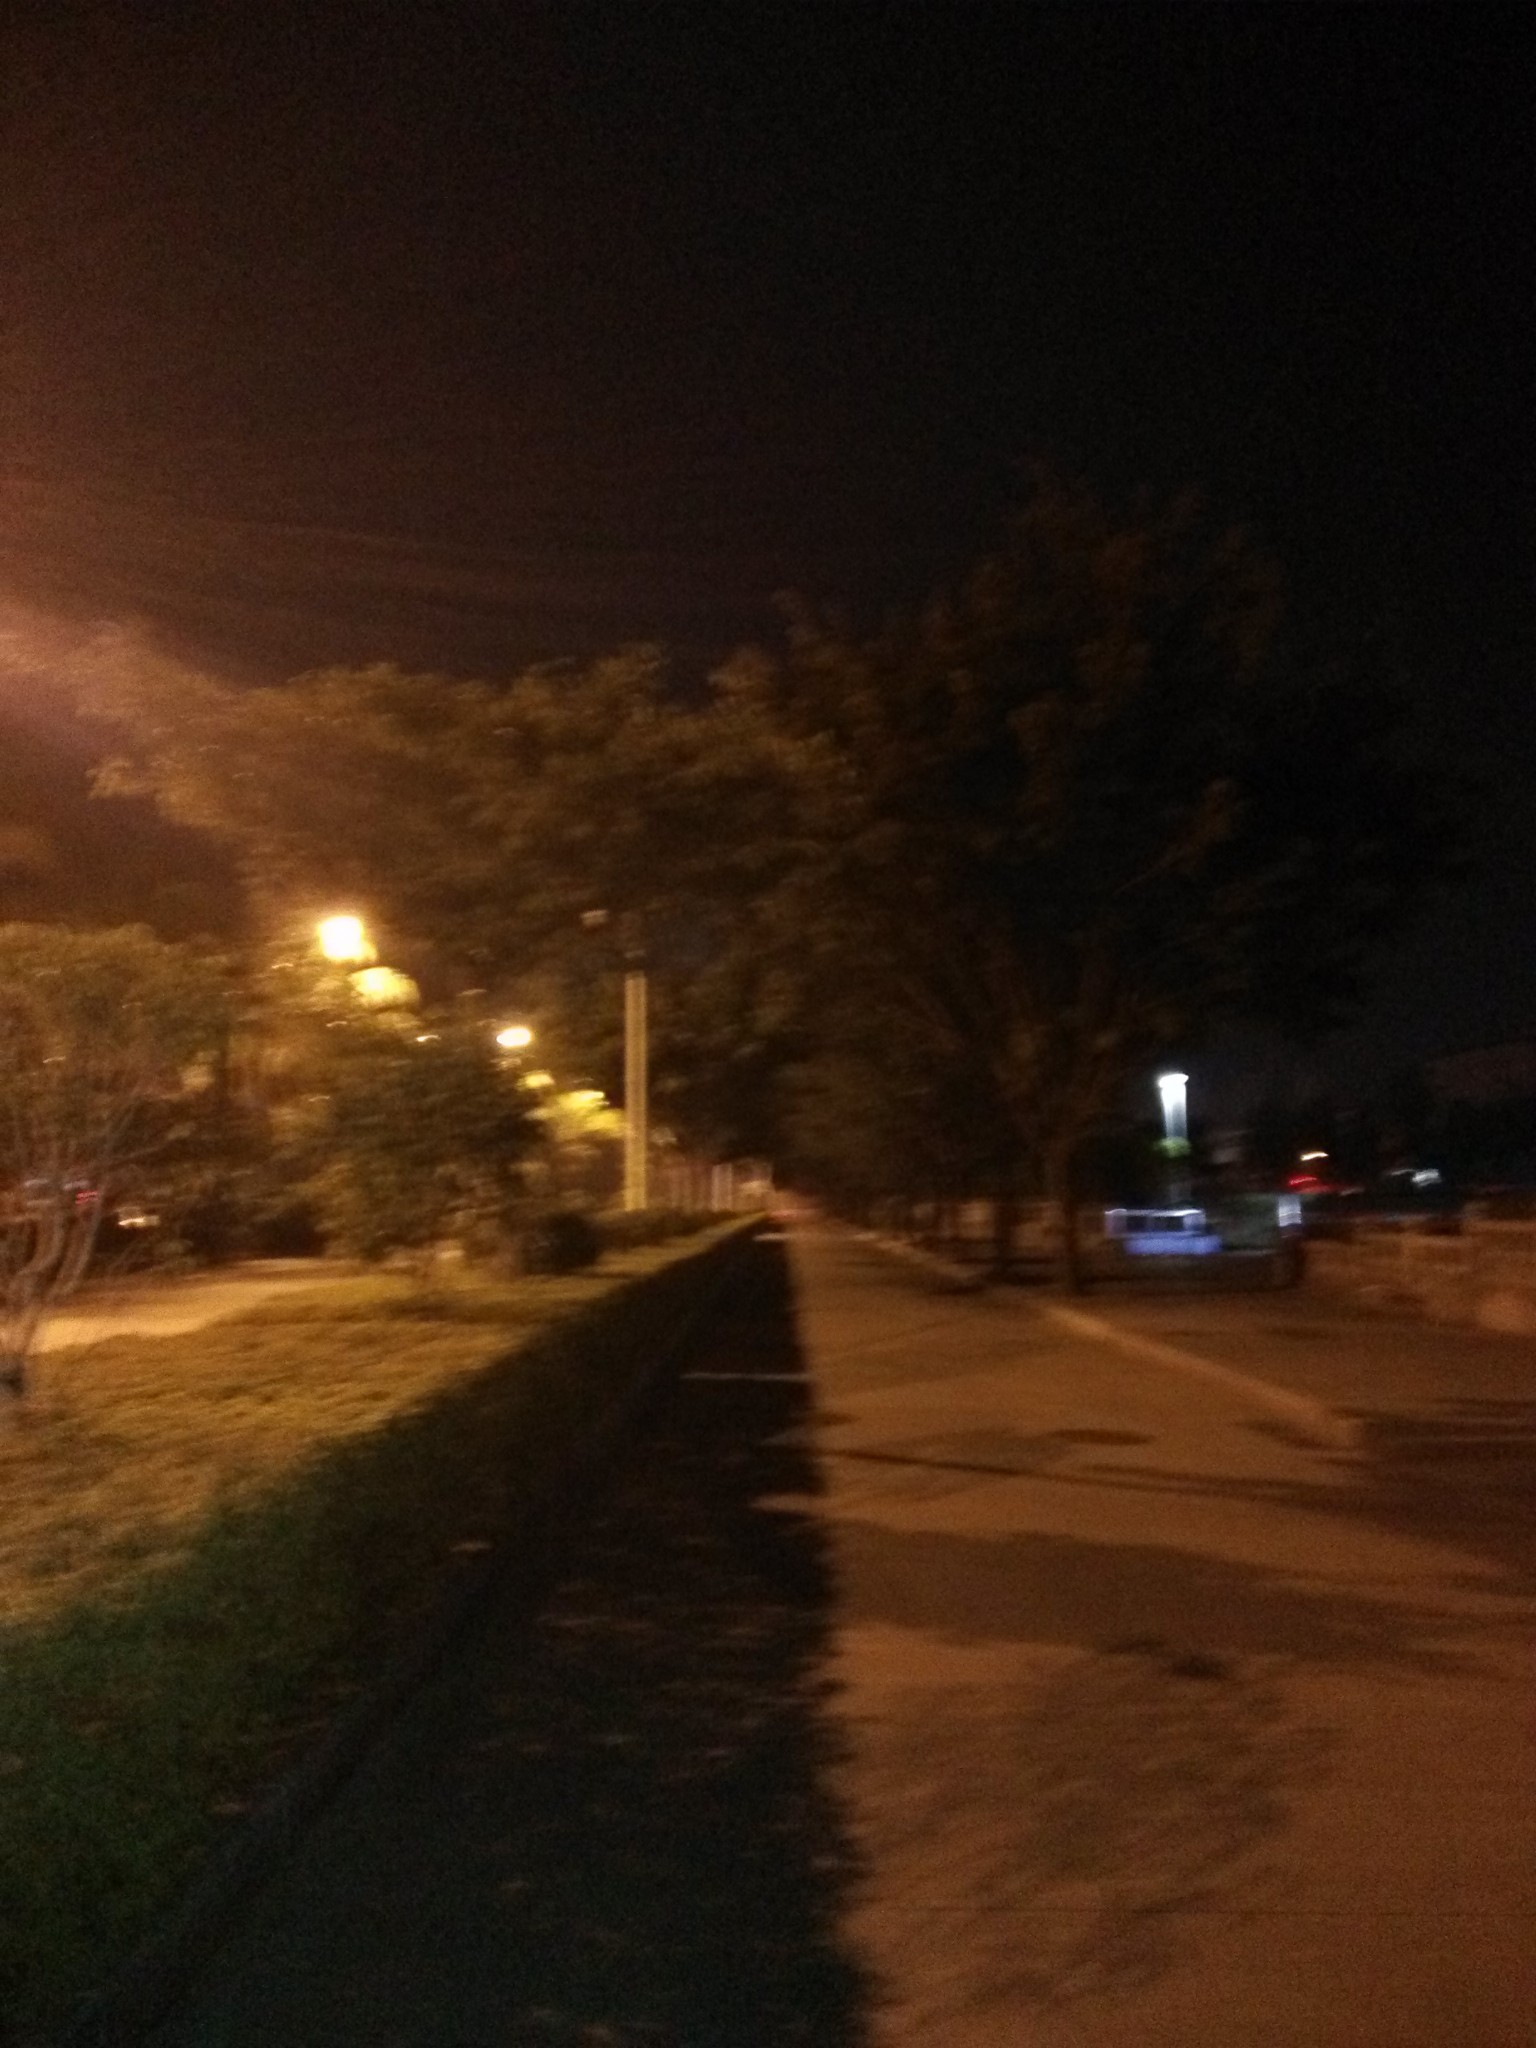 凌晨5点38分,走在清冷的街道上,没有觉得因为一个人而觉得